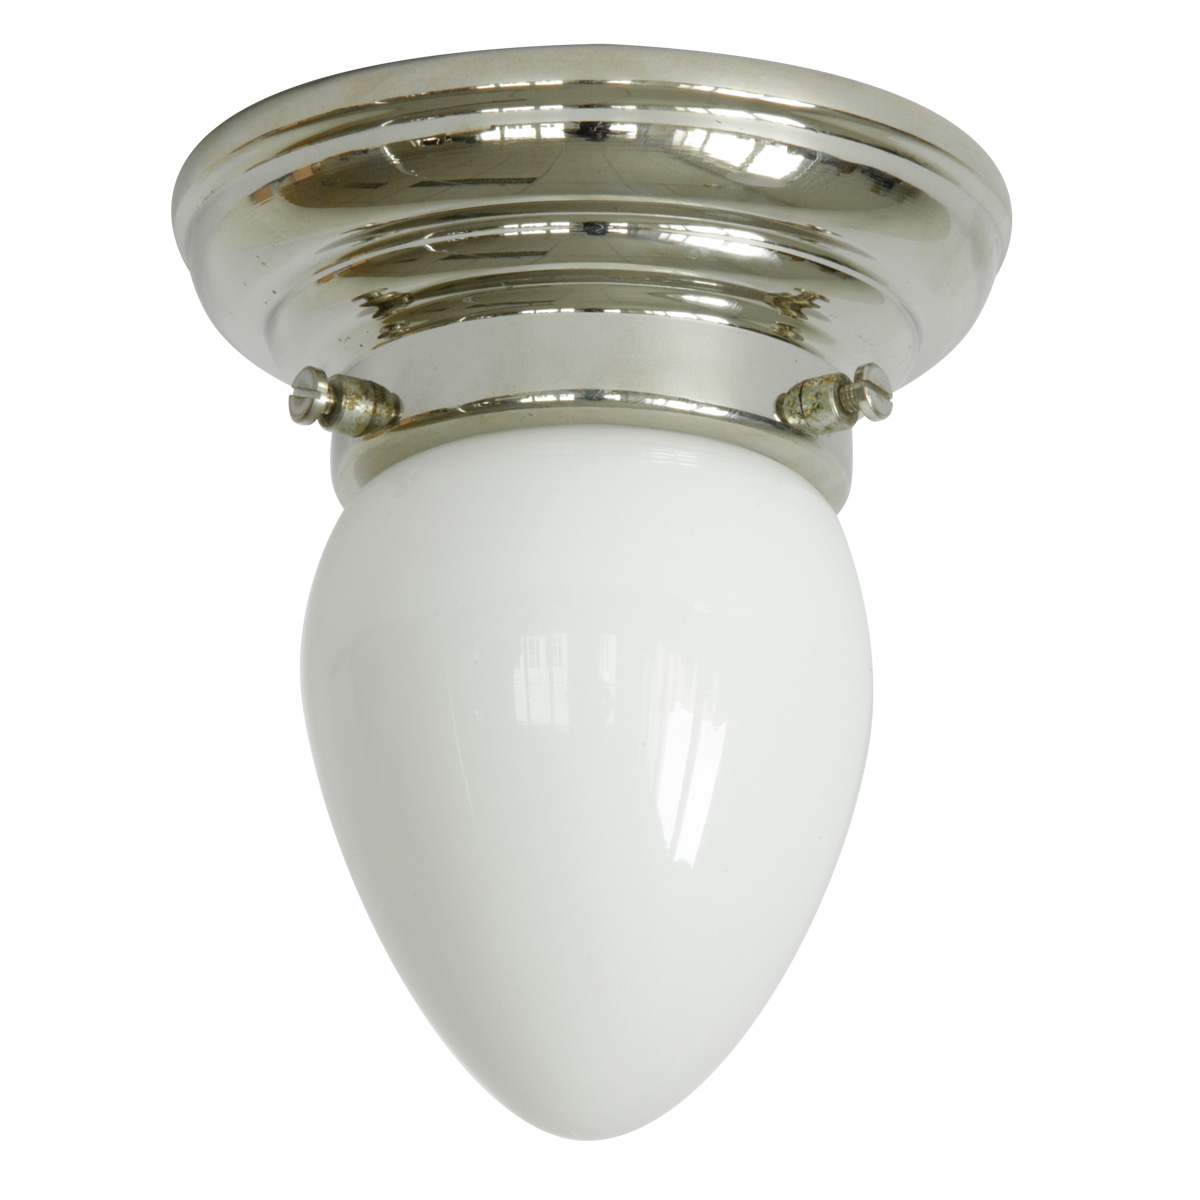 Sehr kleine Deckenlampe mit weißem Spitzglas Ø 10,5 cm: Deckenleuchte, abgebildet mit glanzvernickeltem Deckenteil